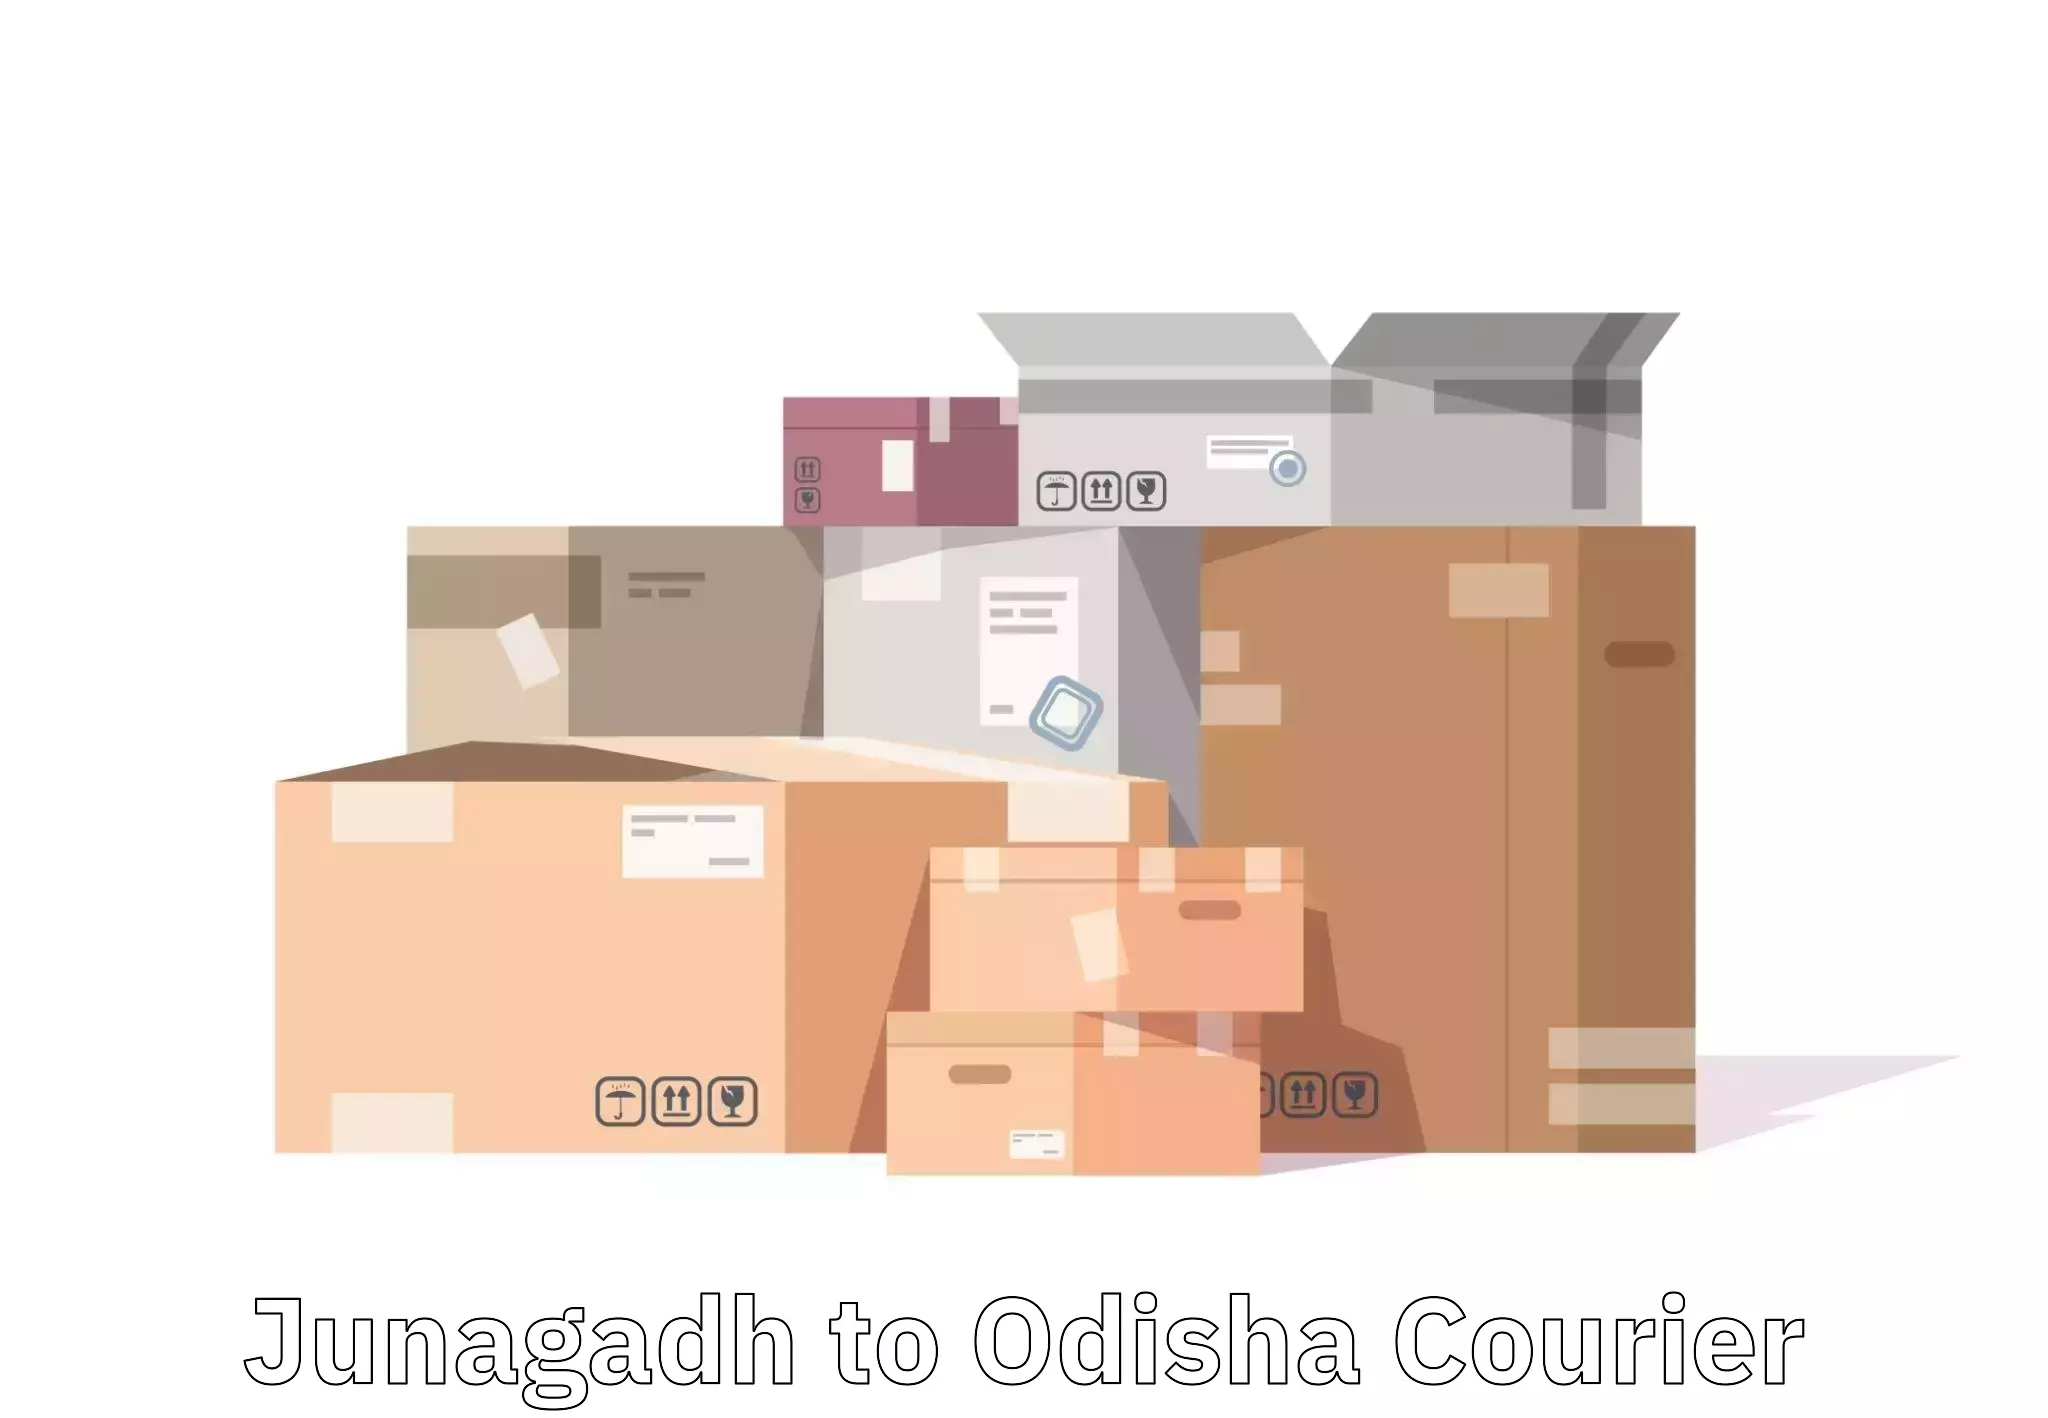 Luggage delivery app Junagadh to Sohela